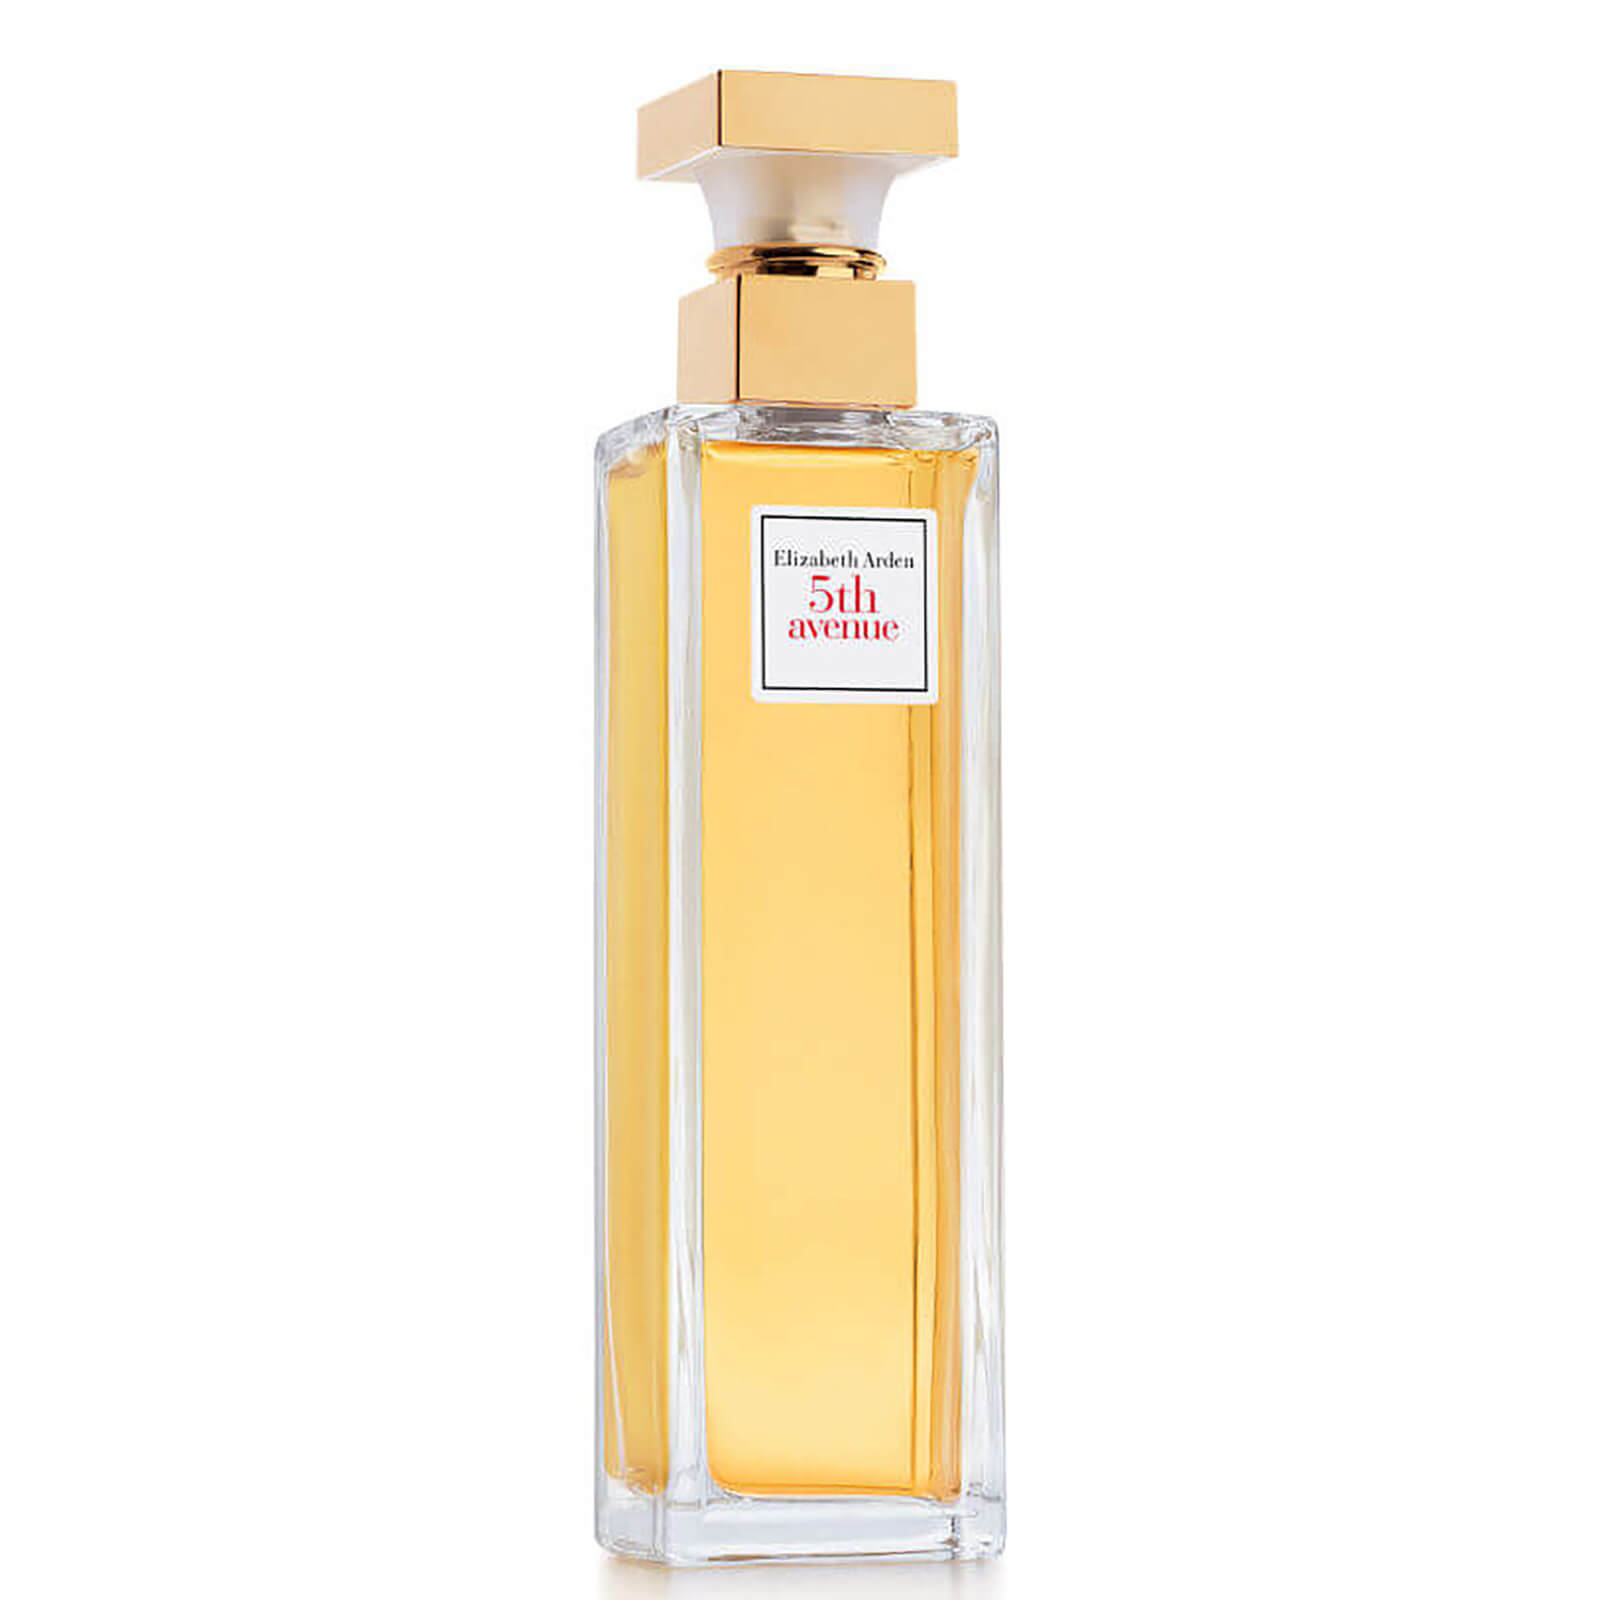 Image of Eau de Parfum Profumo 5th Avenue Elizabeth Arden 125ml